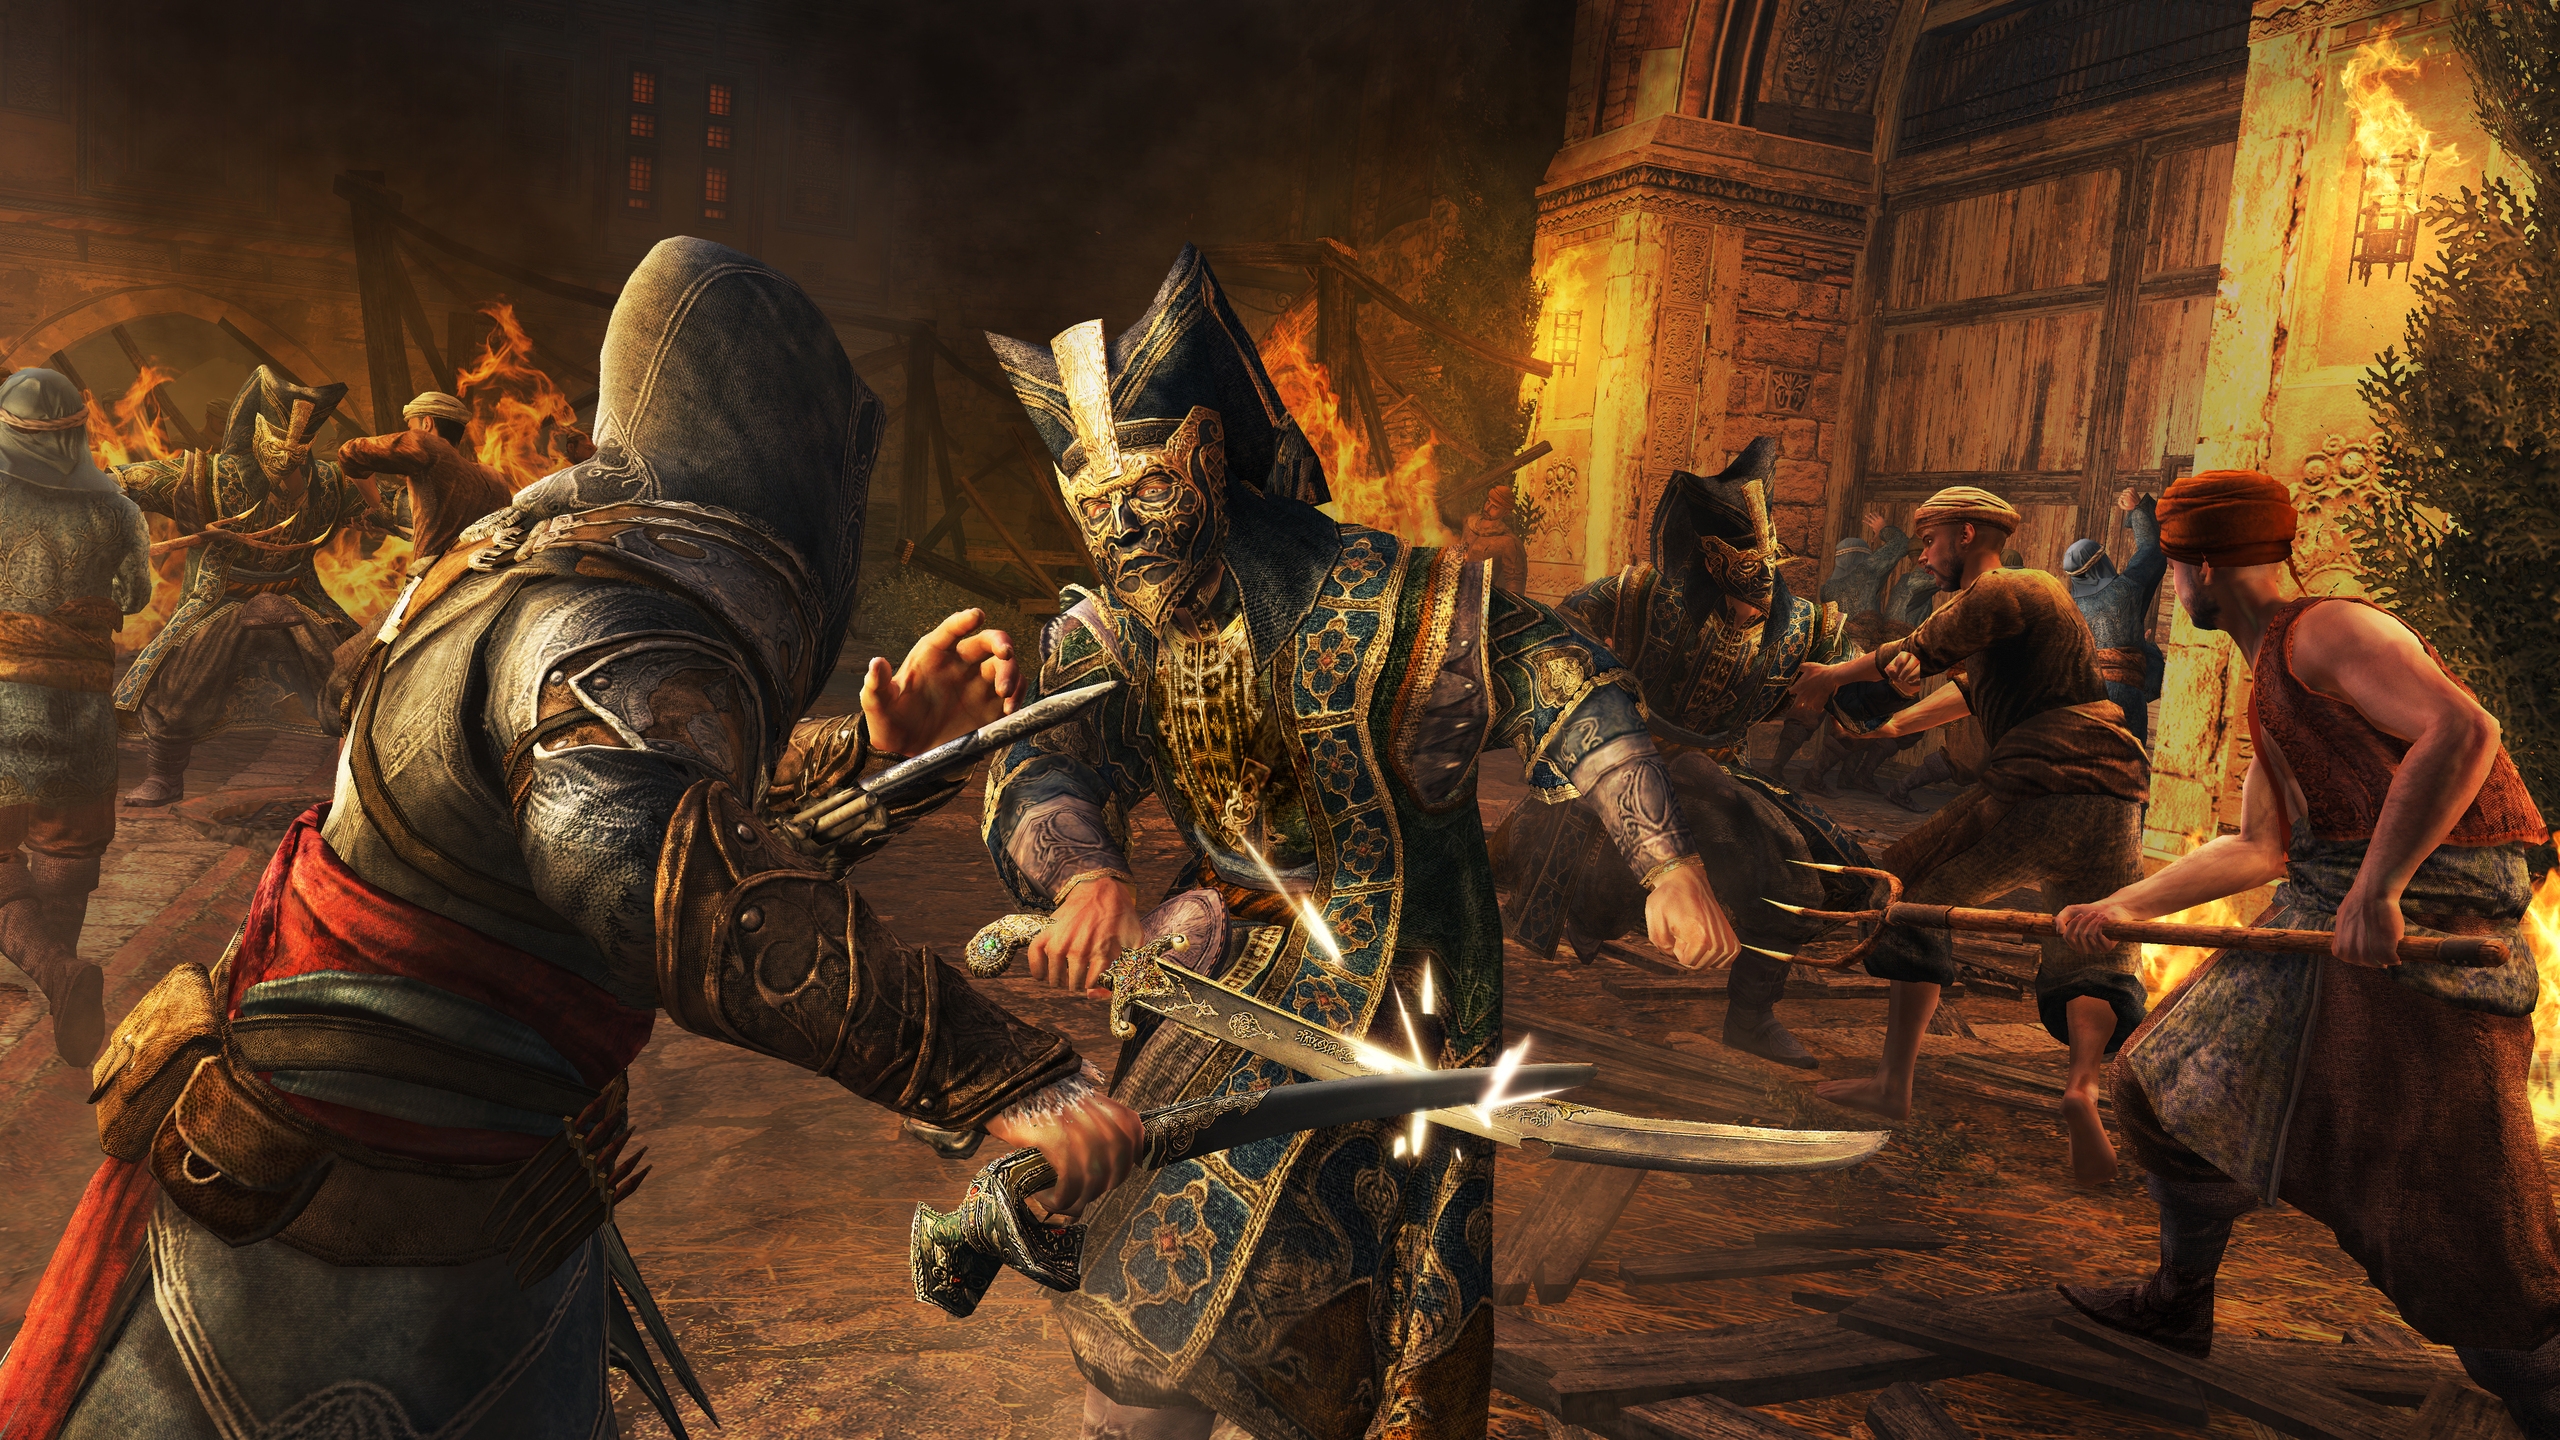 Assassin Creed Revelations Scene for 2560x1440 HDTV resolution